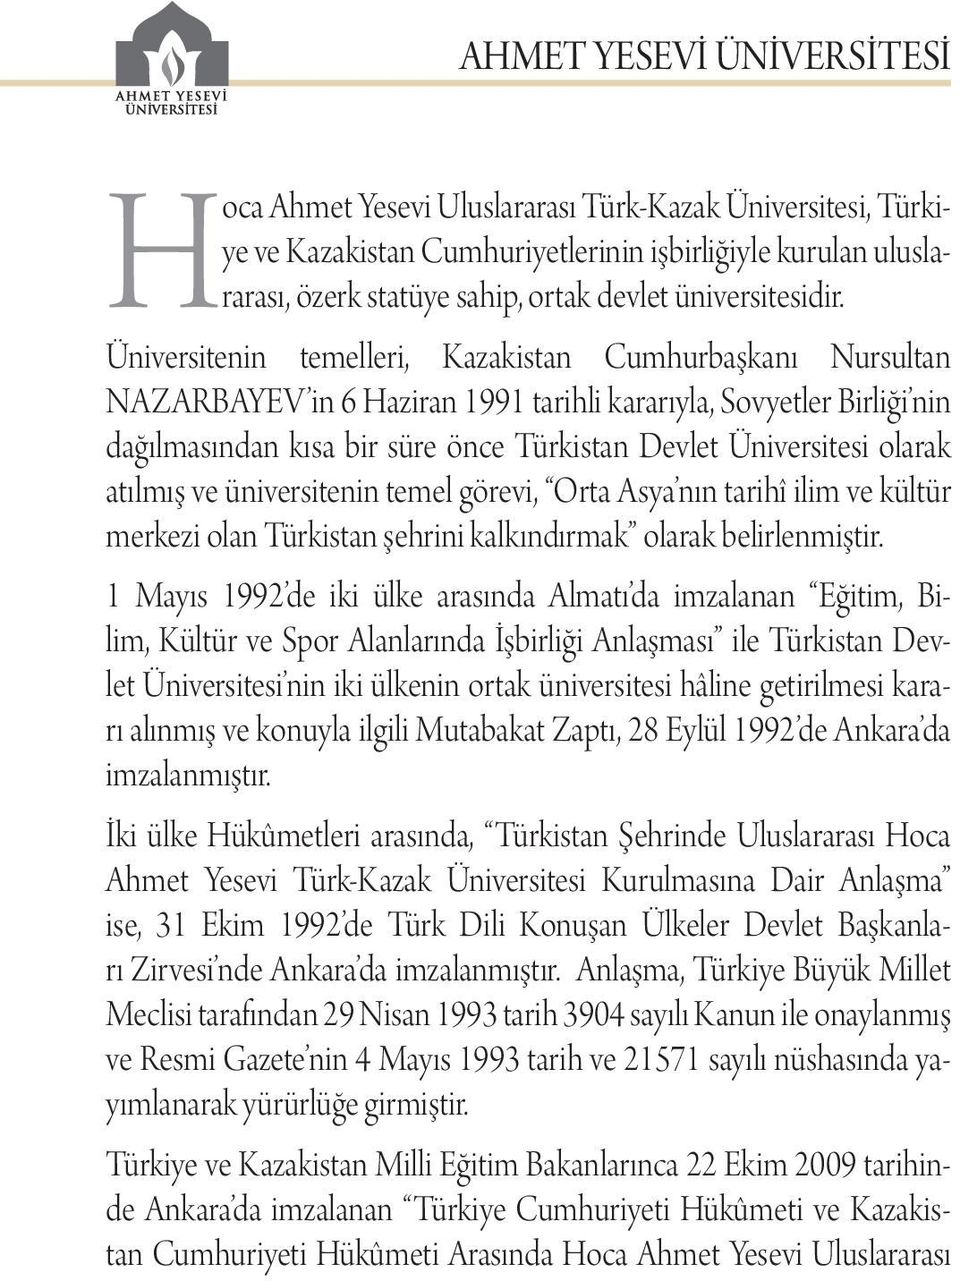 Üniversitenin temelleri, Kazakistan Cumhurbaşkanı Nursultan NAZARBAYEV in 6 Haziran 1991 tarihli kararıyla, Sovyetler Birliği nin dağılmasından kısa bir süre önce Türkistan Devlet Üniversitesi olarak